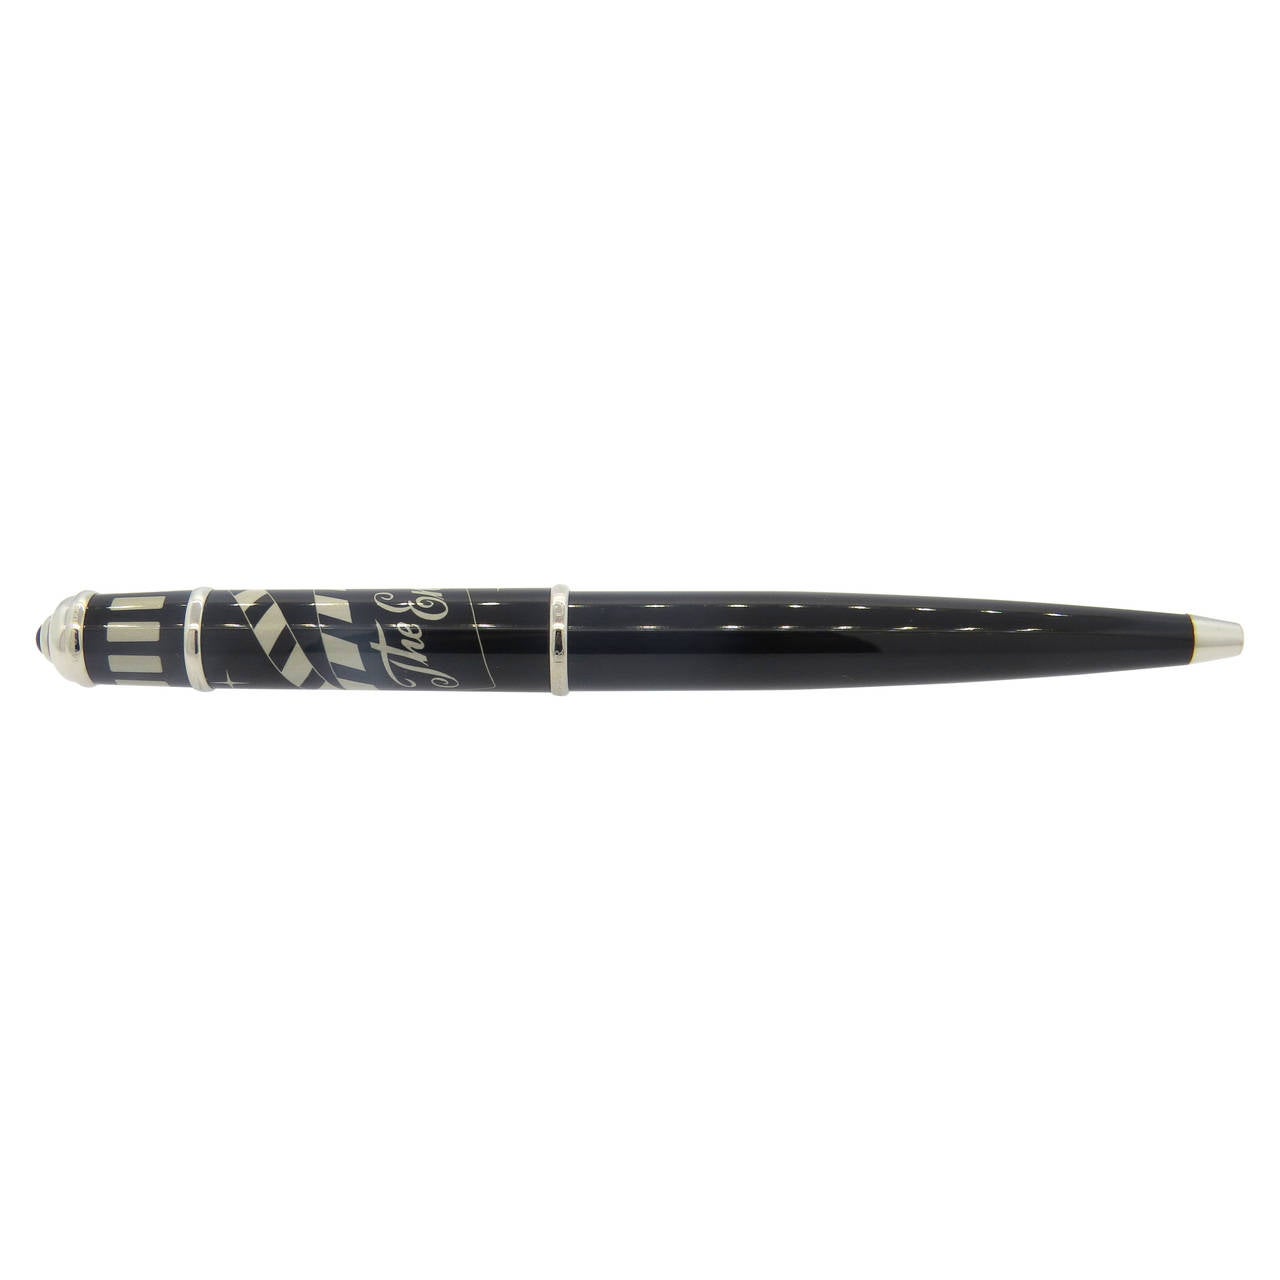 Cartier Diabolo Cinema Black Lacquer Limited Edition Ballpoint Pen